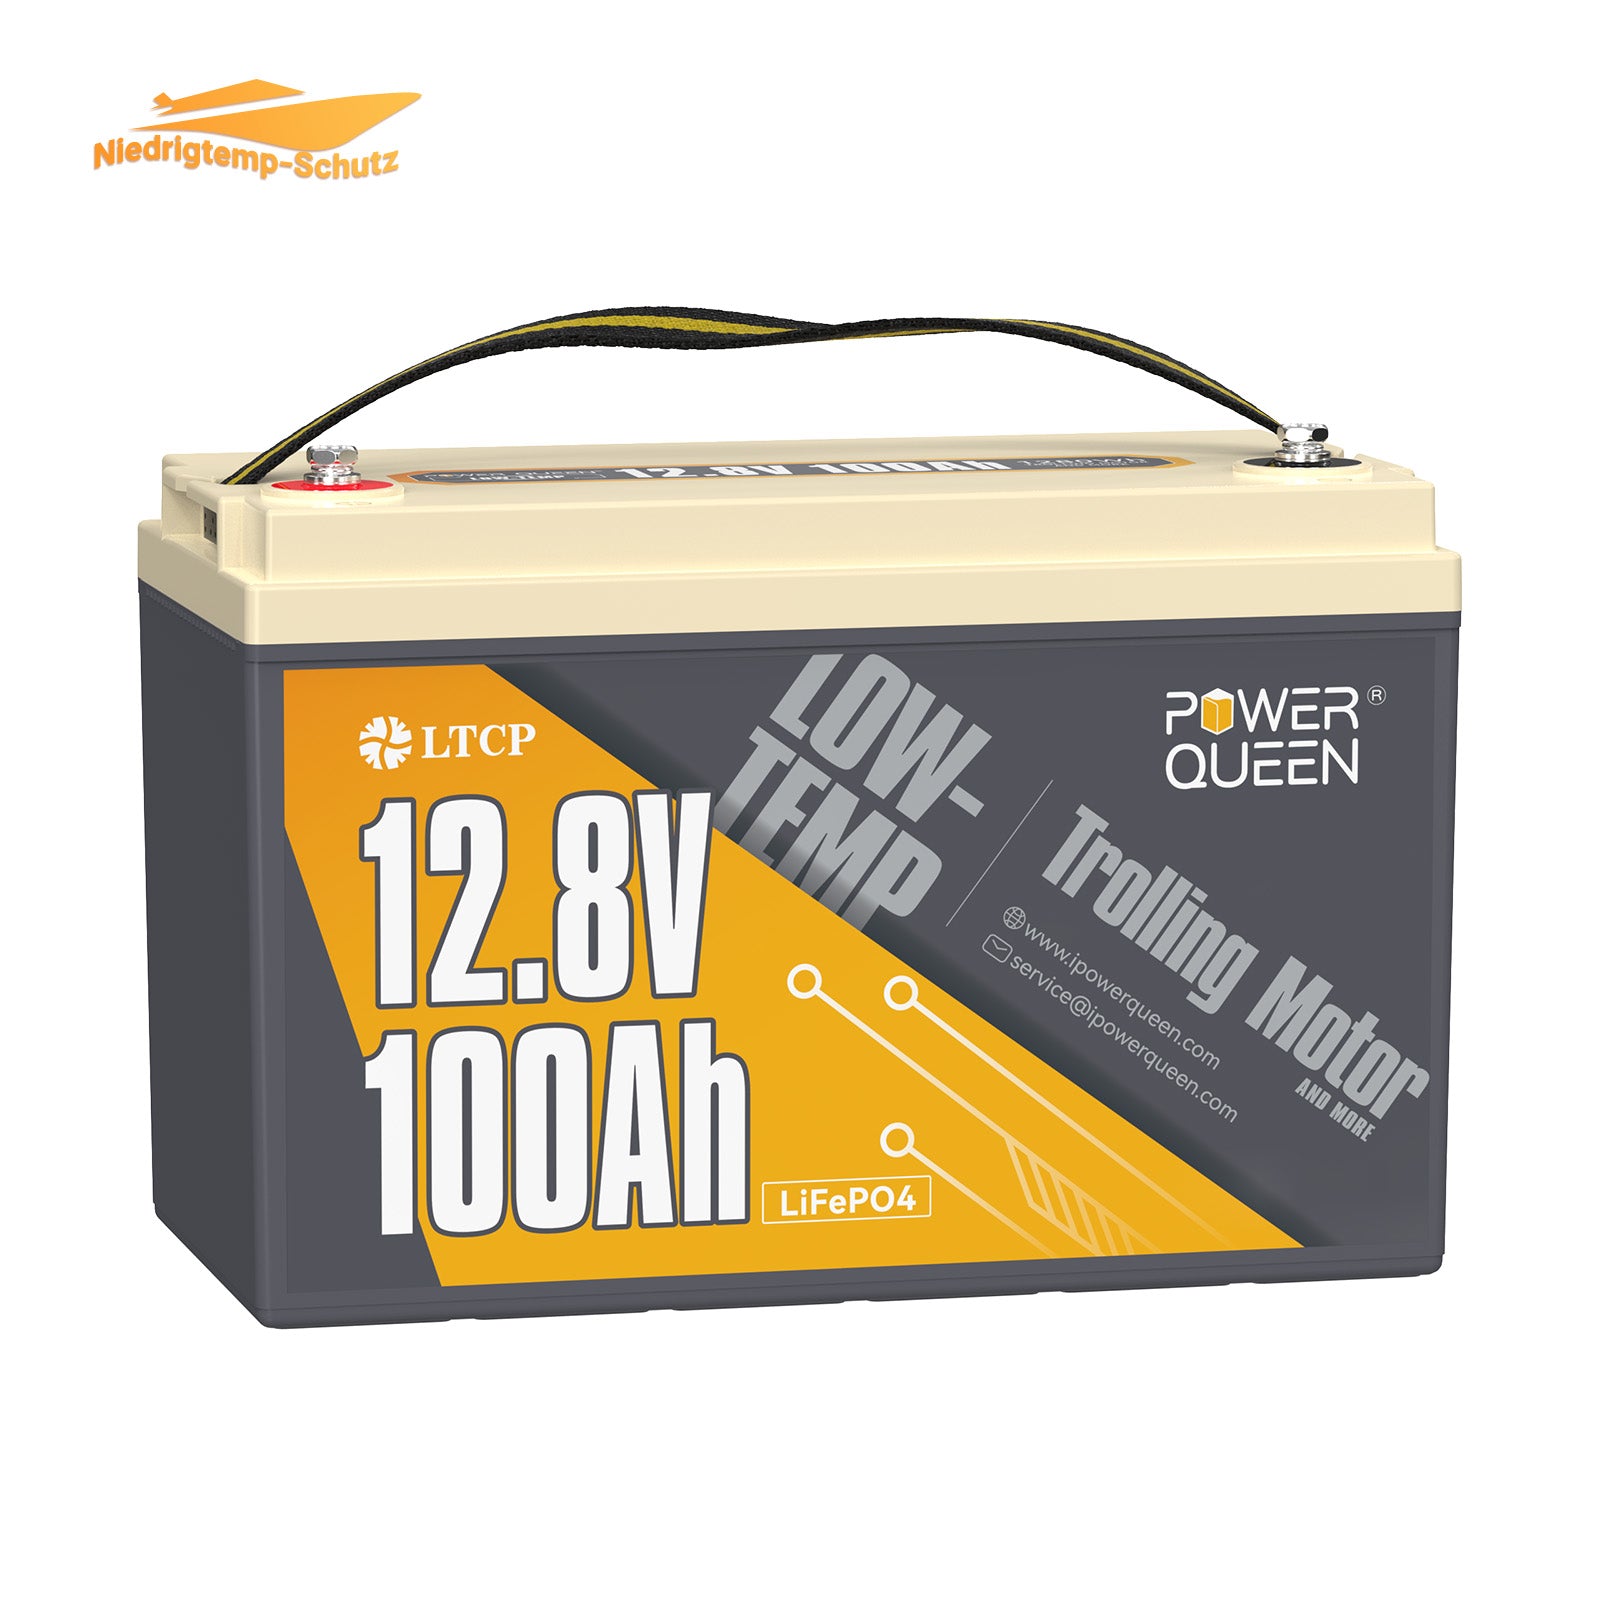 Batteria LiFePO4 a bassa temperatura Power Queen da 12,8 V 100 Ah, batteria per motore da pesca alla traina